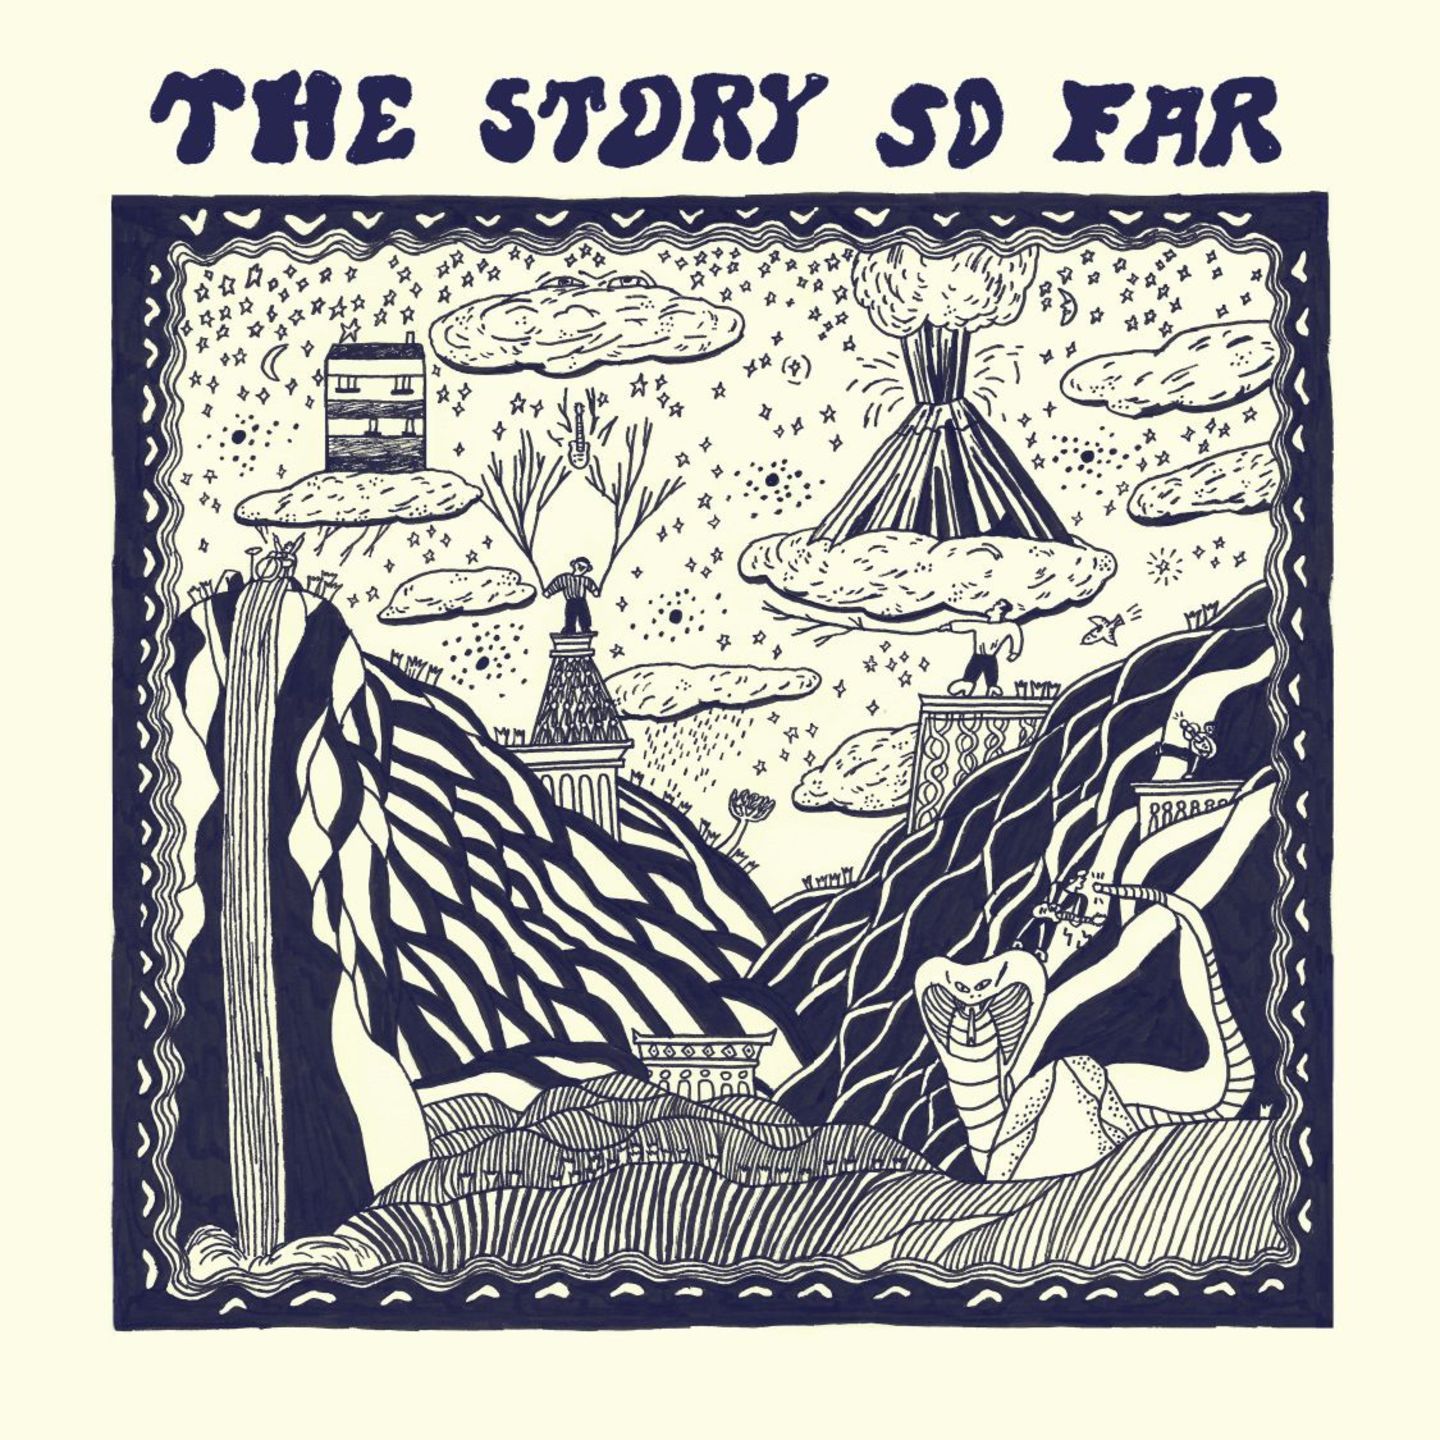 STORY SO FAR, THE - The Story So Far LP Colour Vinyl